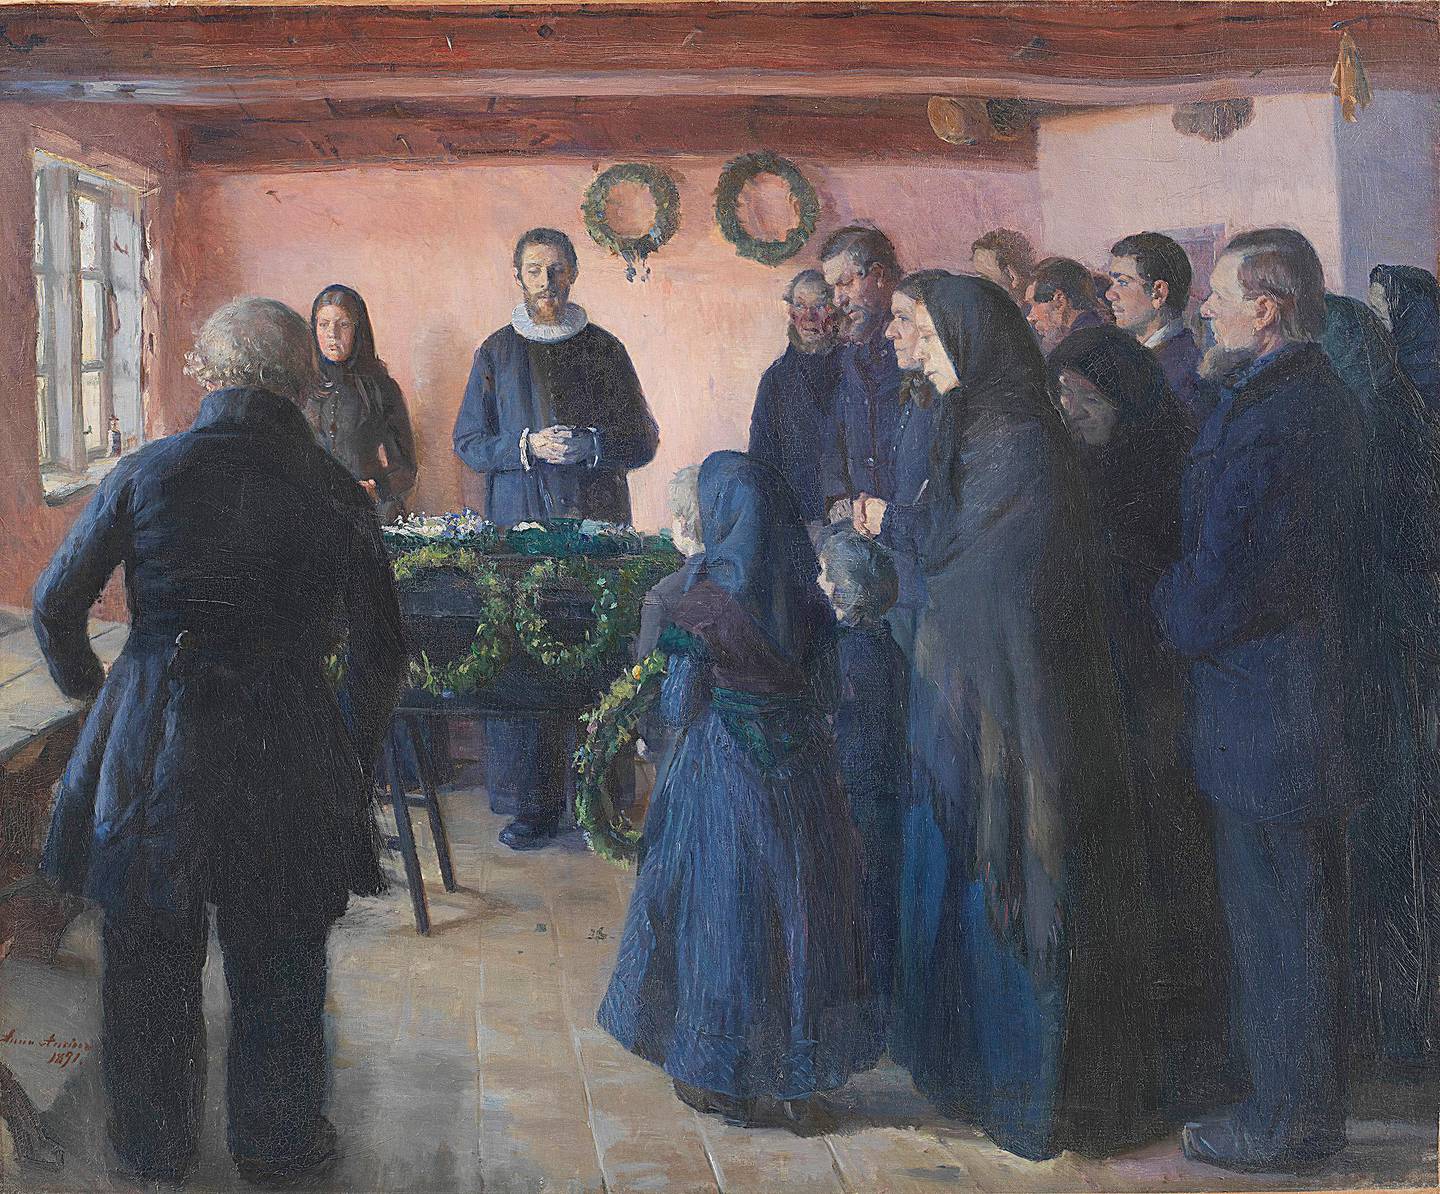 Anna Ancher malte ofte scener fra det religiøse liv på Skagen. Her er En begravelse fra 1891.